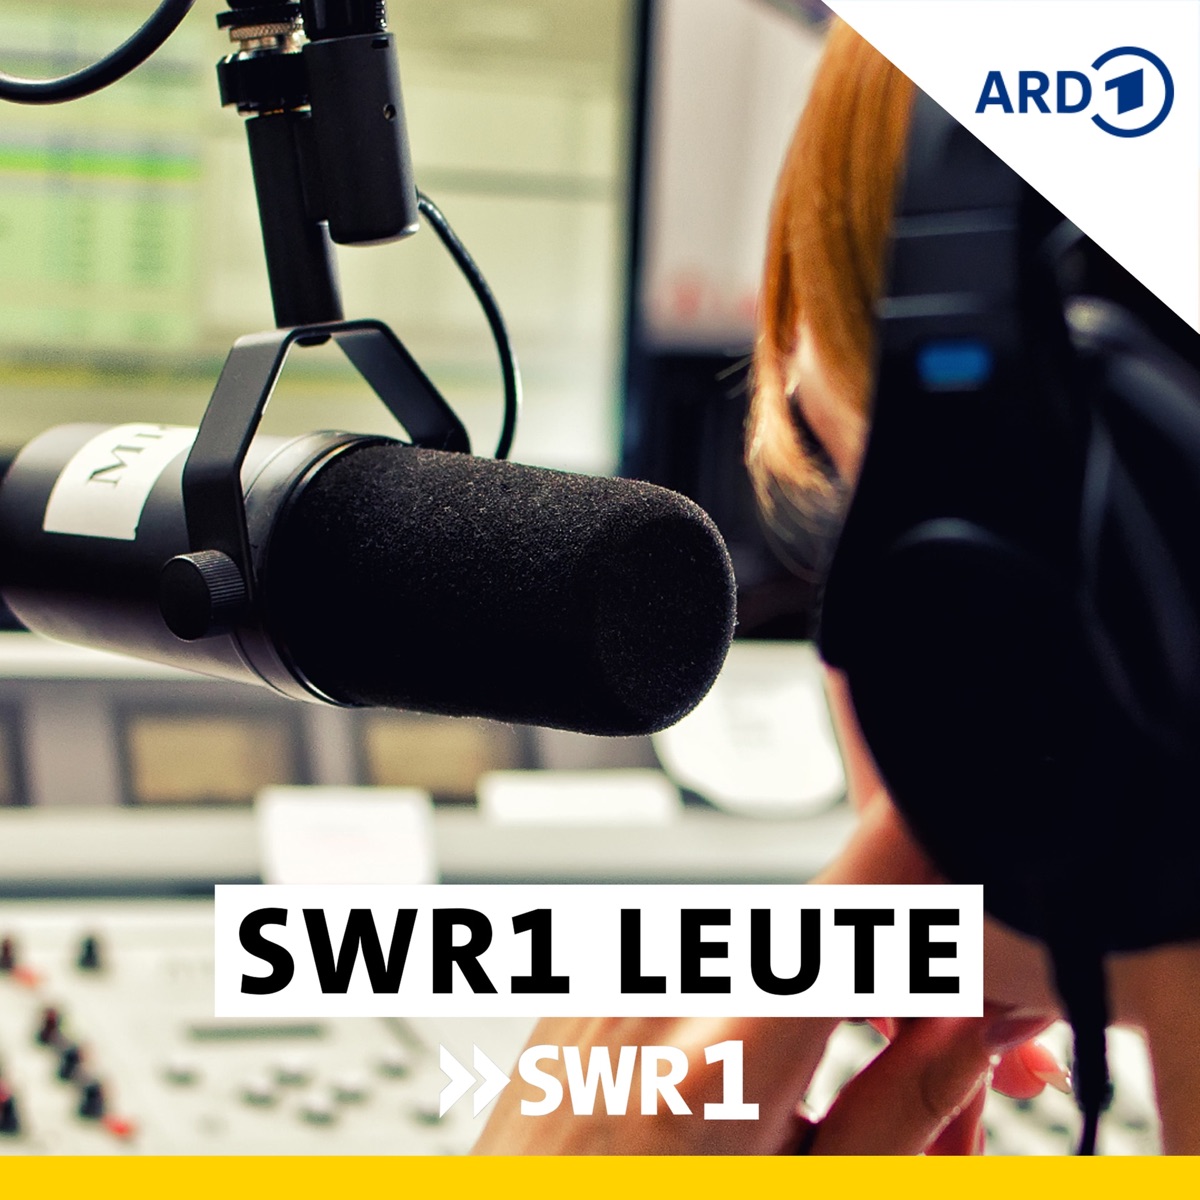 SWR1 Leute der Woche (KW 20 - 2021) | SWR1 Leute - SWR1 ...